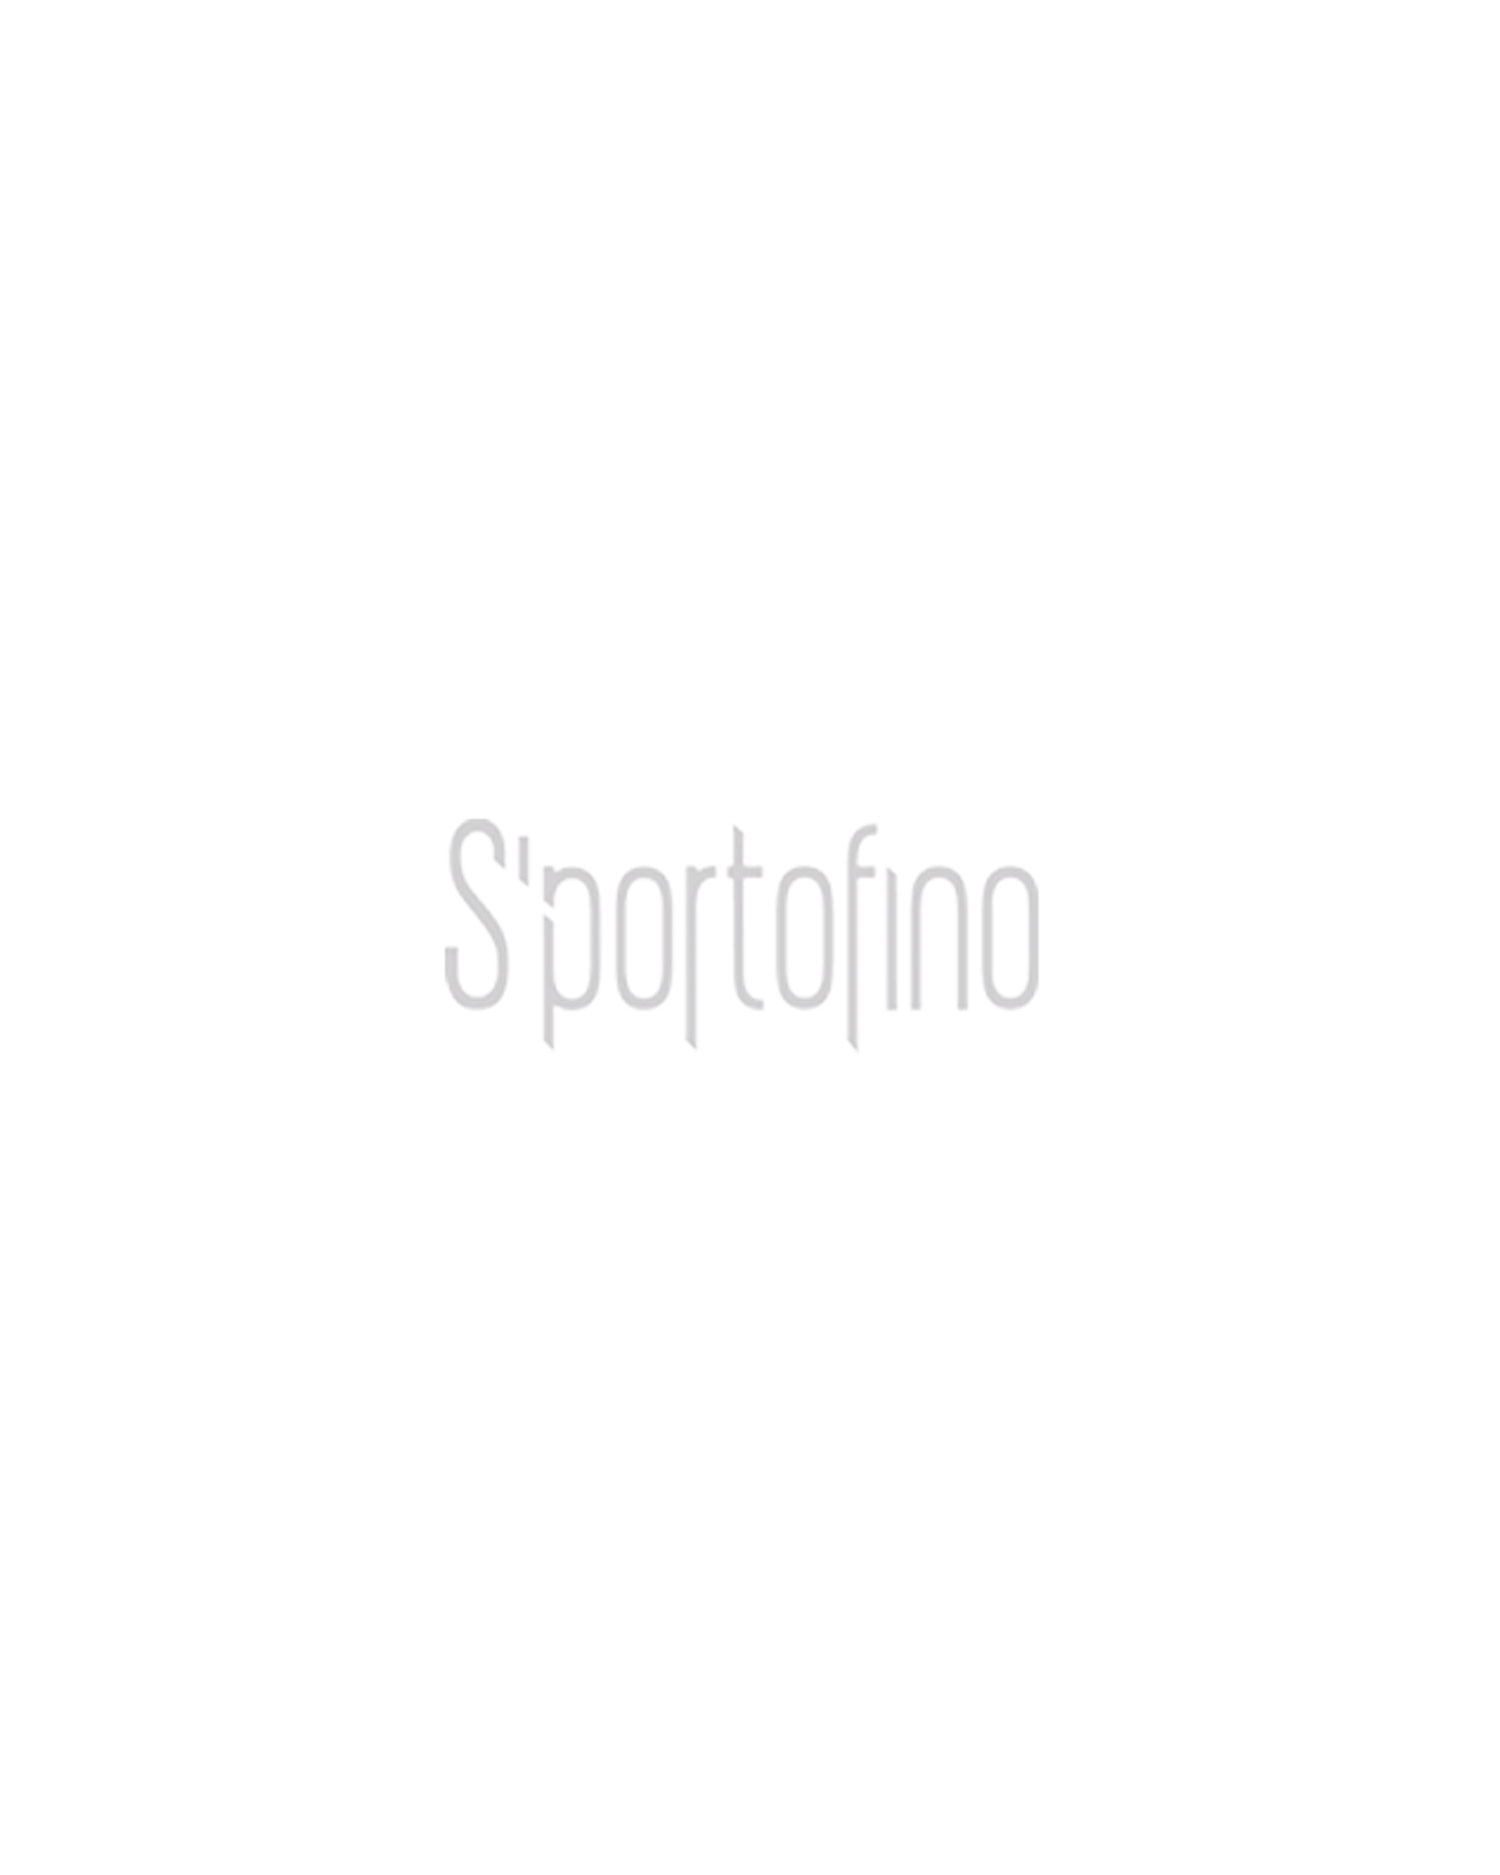 Boty Dolomite 54 HIKE GTX MAN | S'portofino